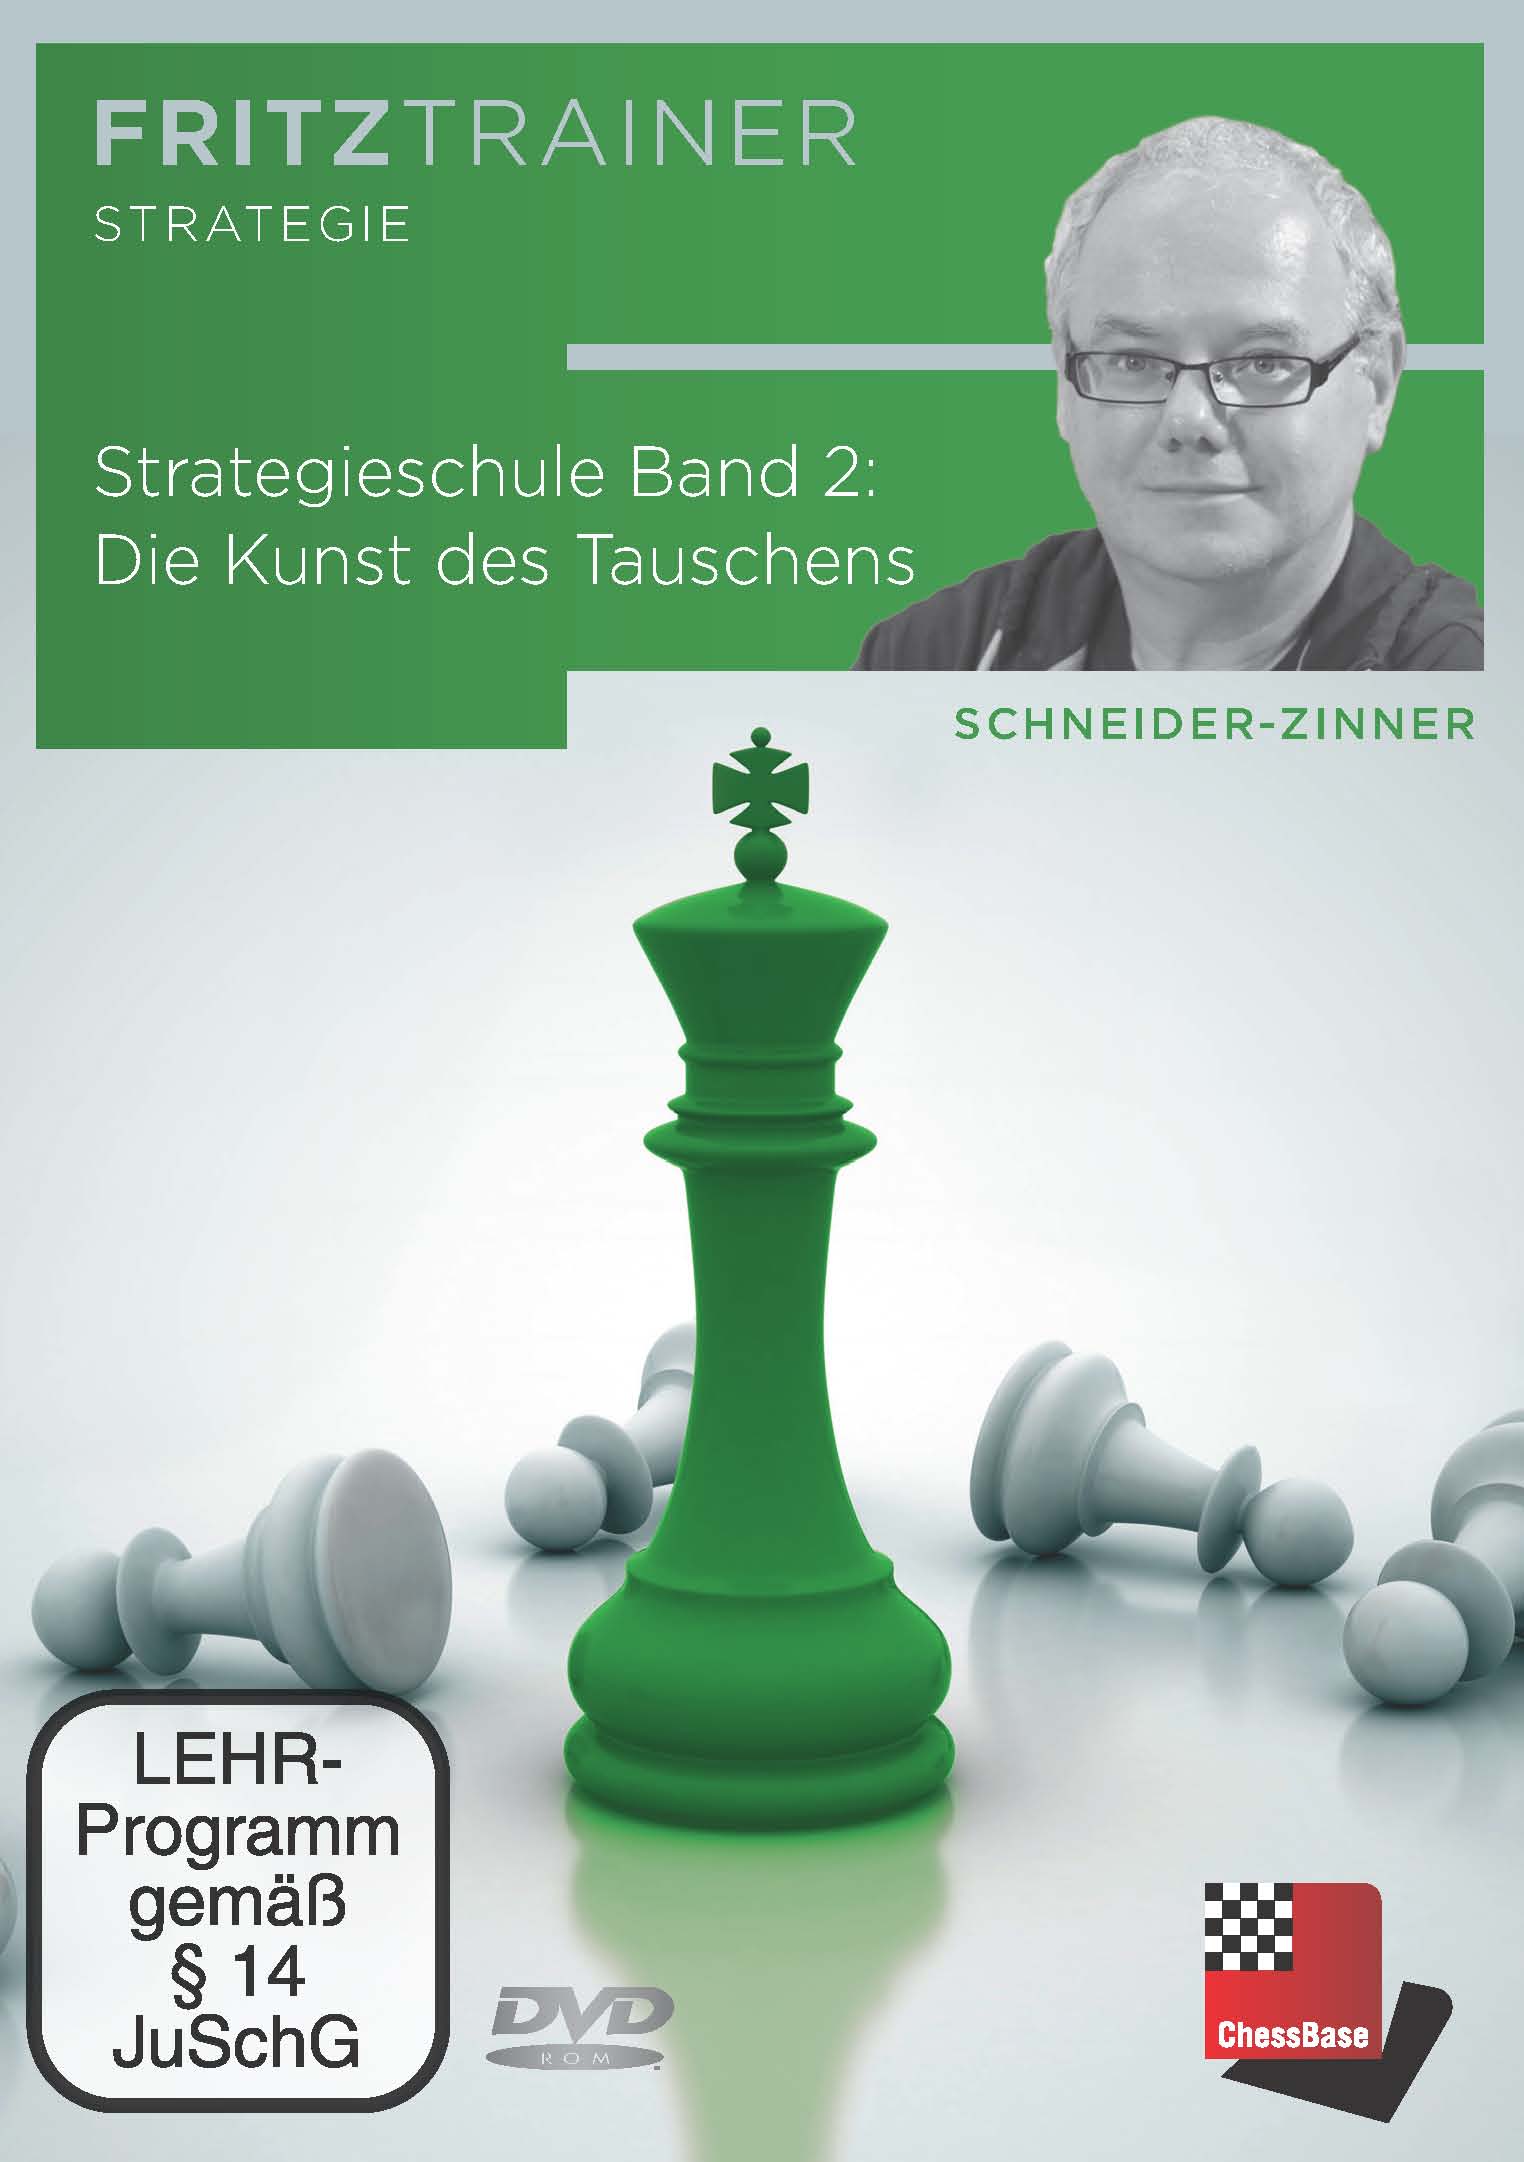 Schneider-Zinner: Strategieschule Band 1 + 2: Allgemeine Prinzipien + Die Kunst des Tauschens